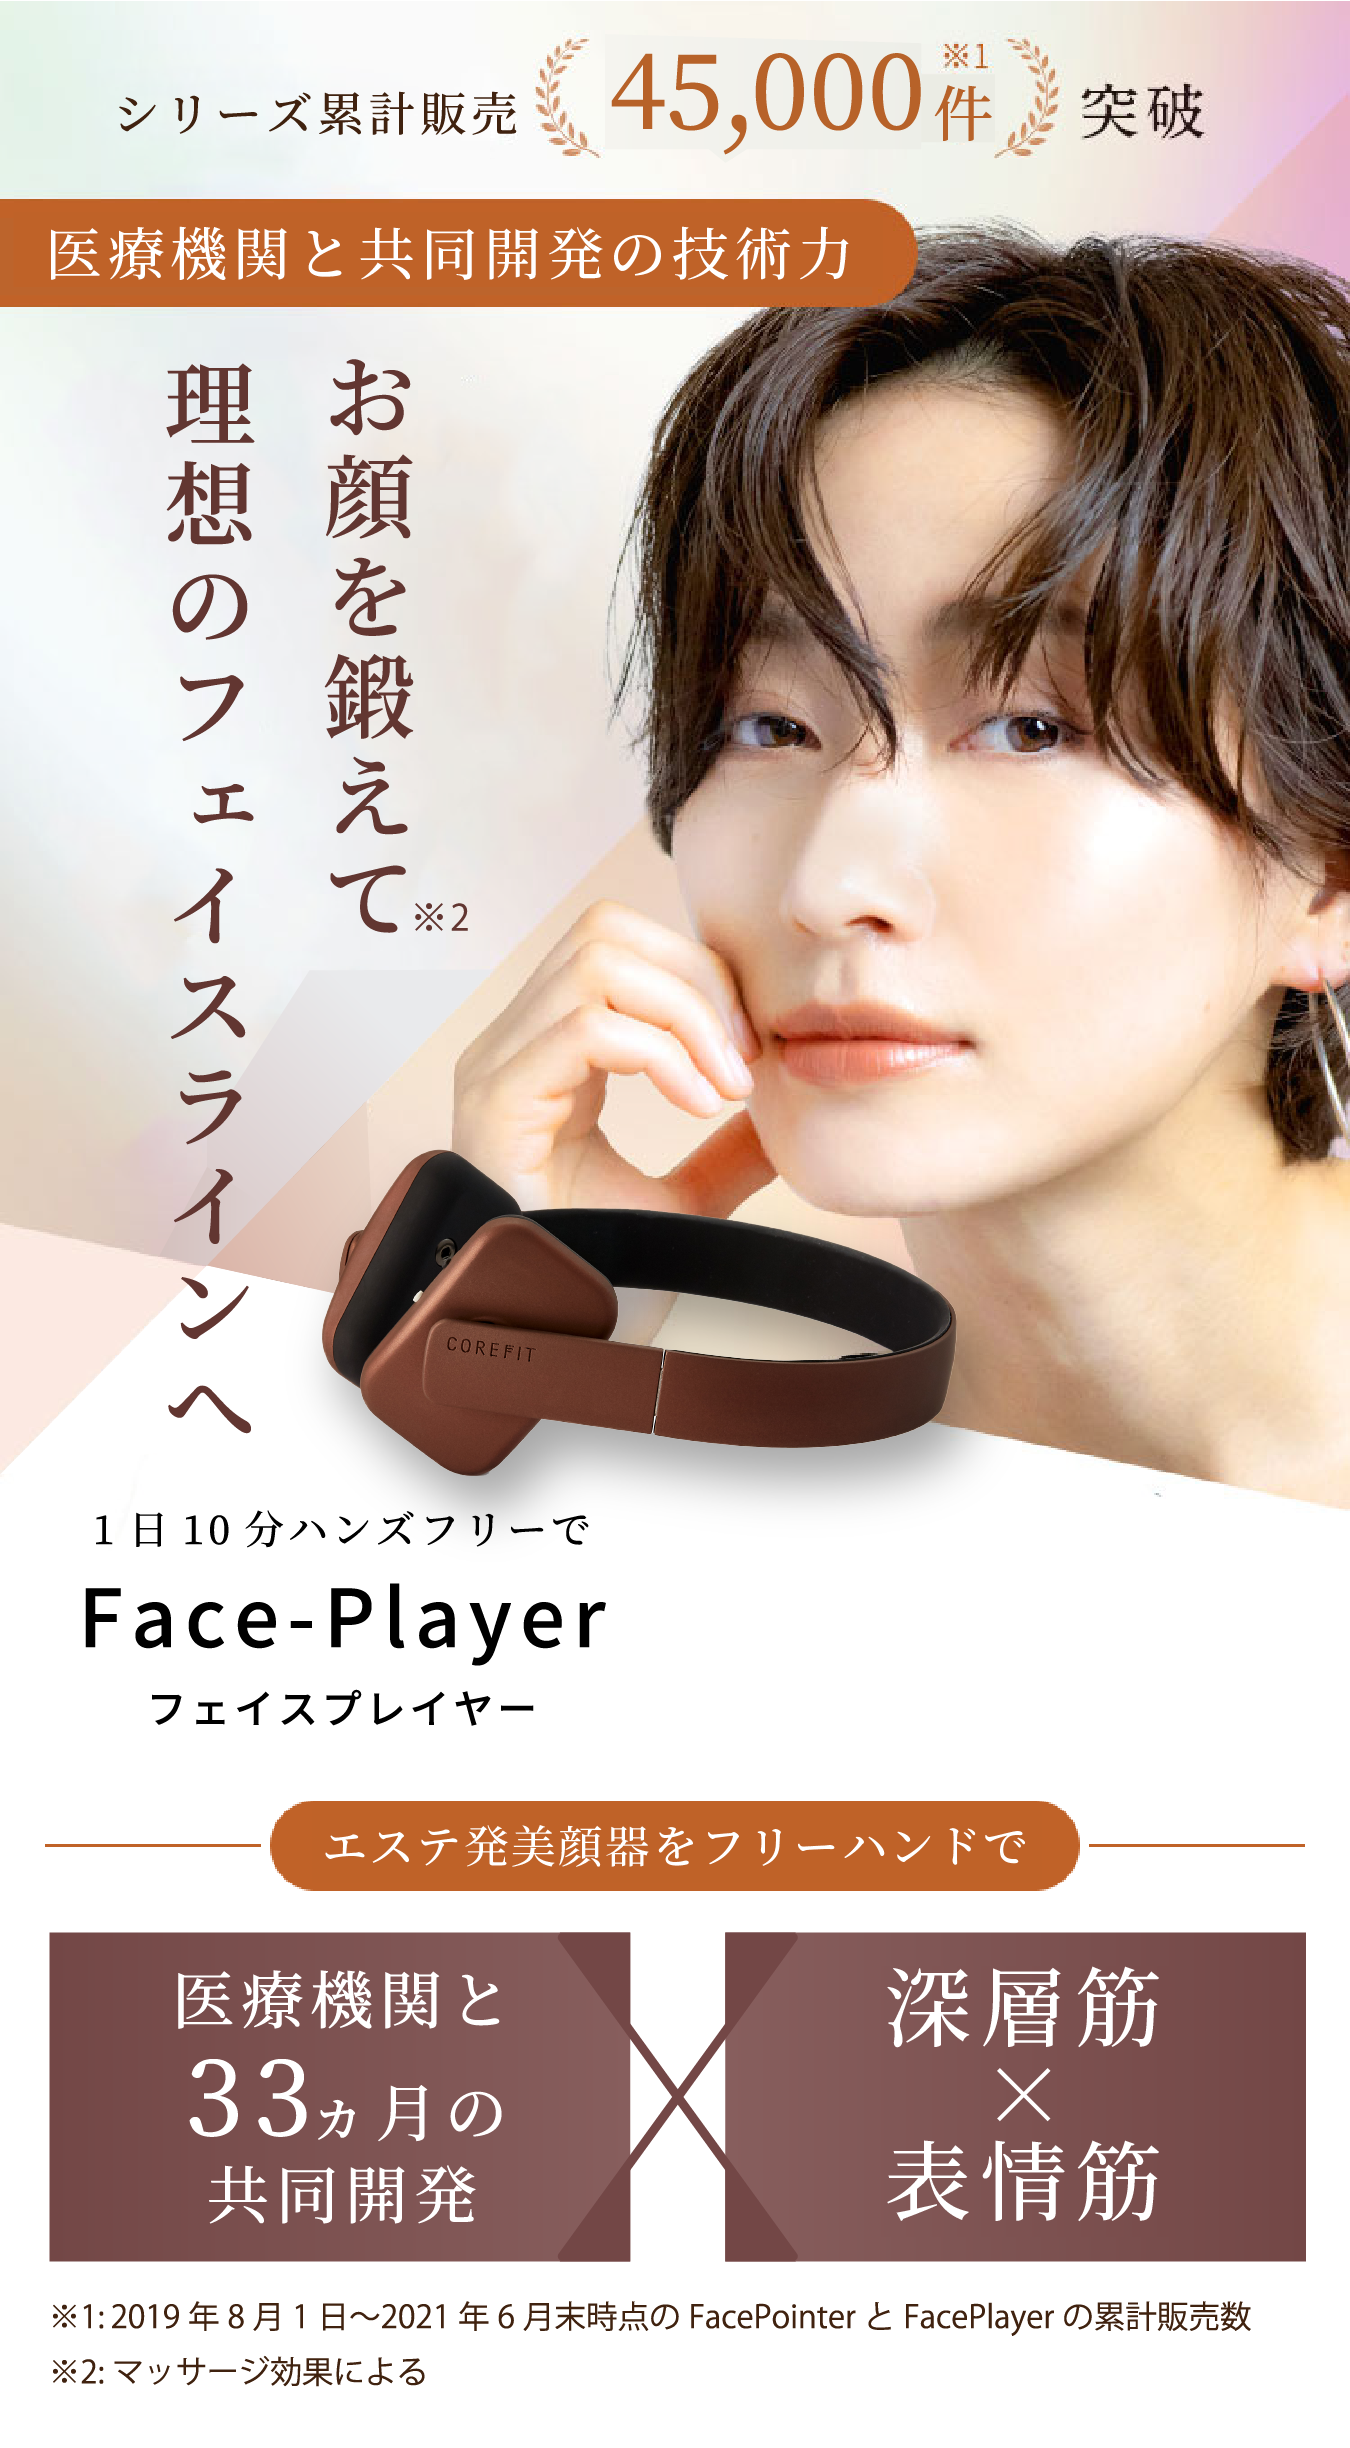 Face-Player フェイスプレイヤー - 【COREFIT公式オンラインストア 